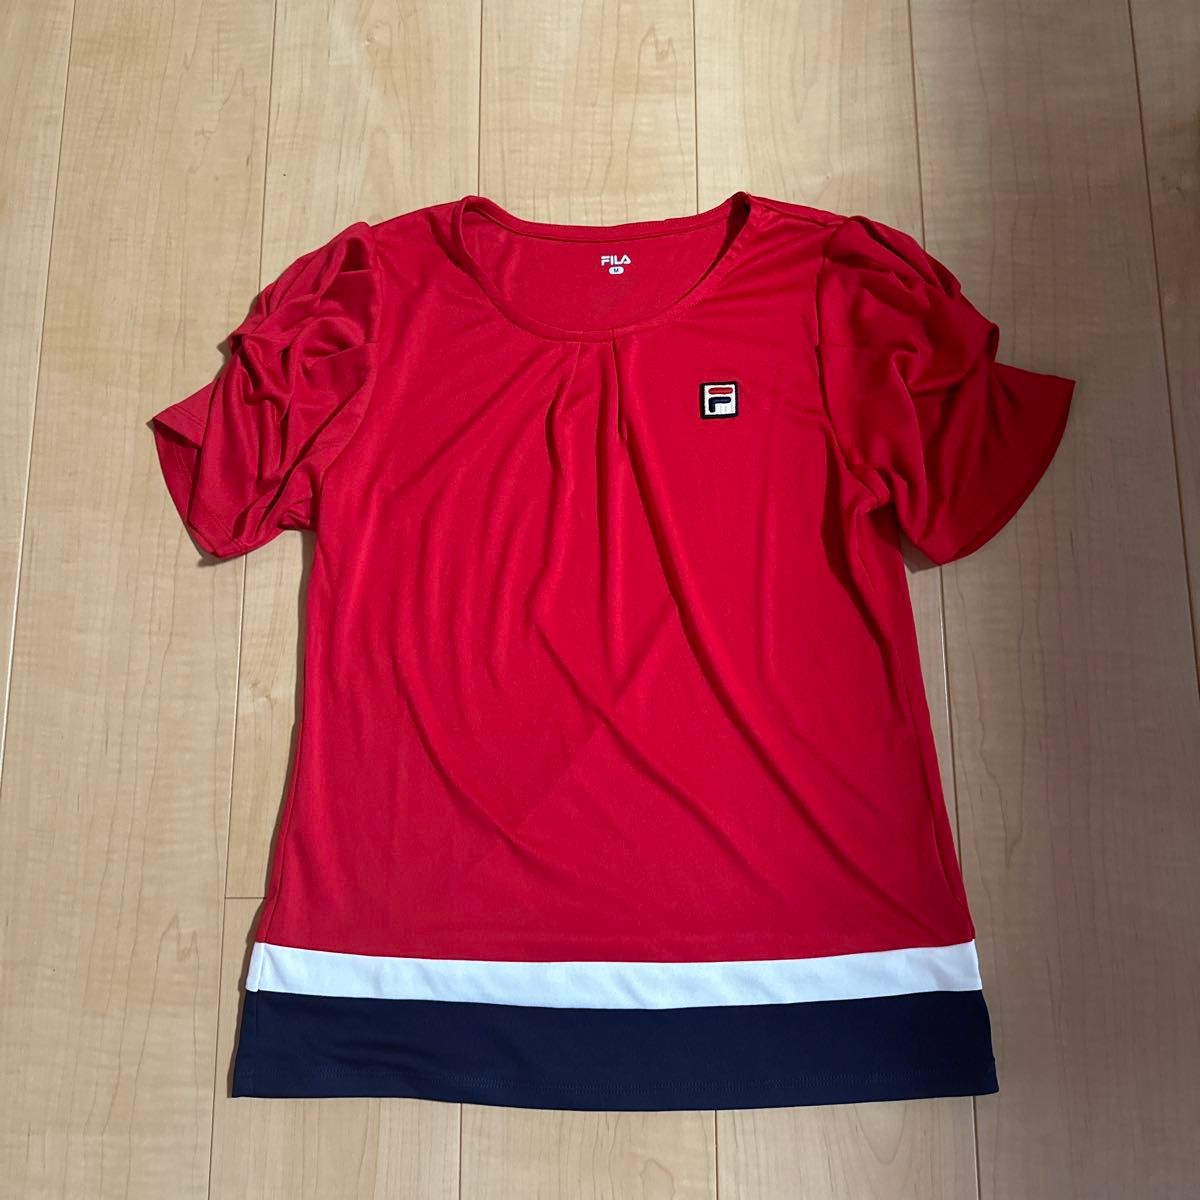 fila(フィラ)33 ゲームシャツテニスゲームシャツ(vl2697-11)